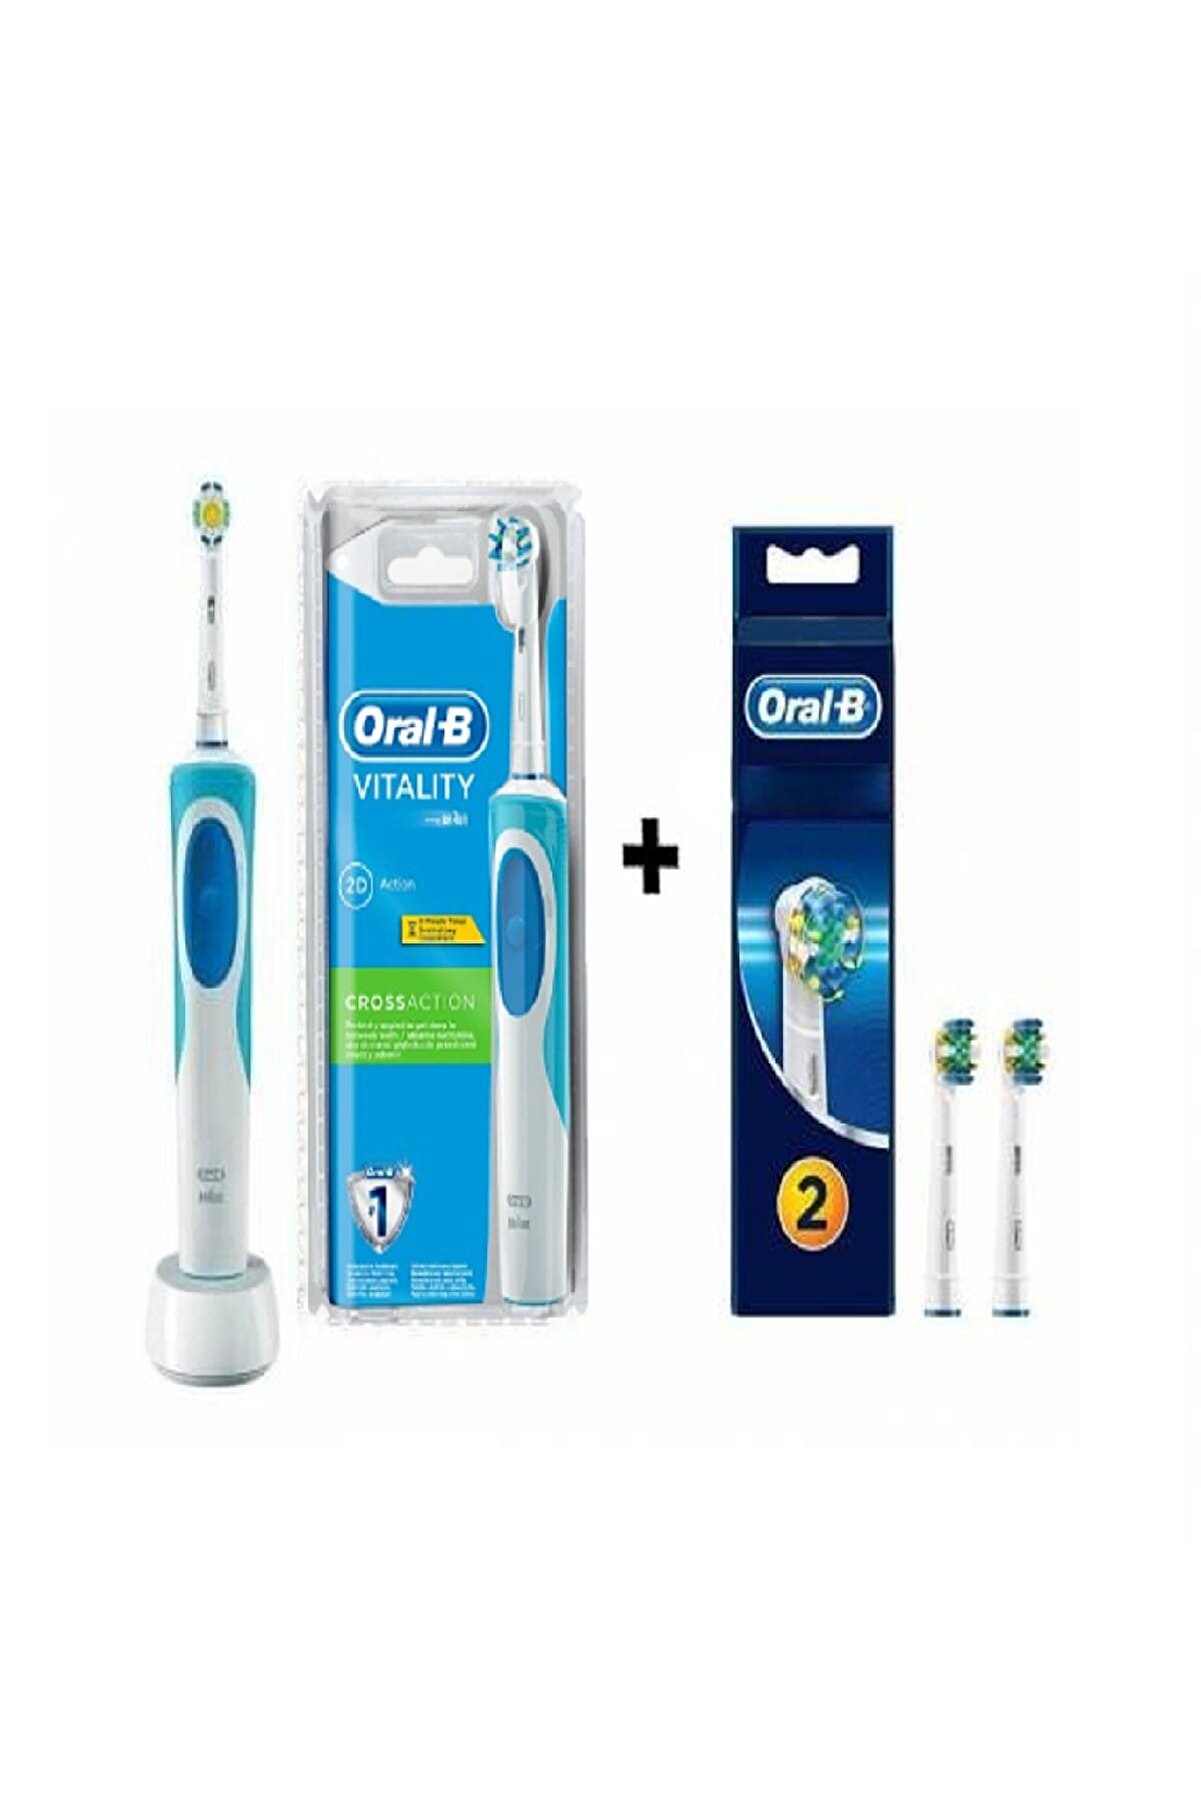 Oral-B Şarjlı Diş Fırçası Vitality Cross Action + 2 Li Başlık Hediyeli